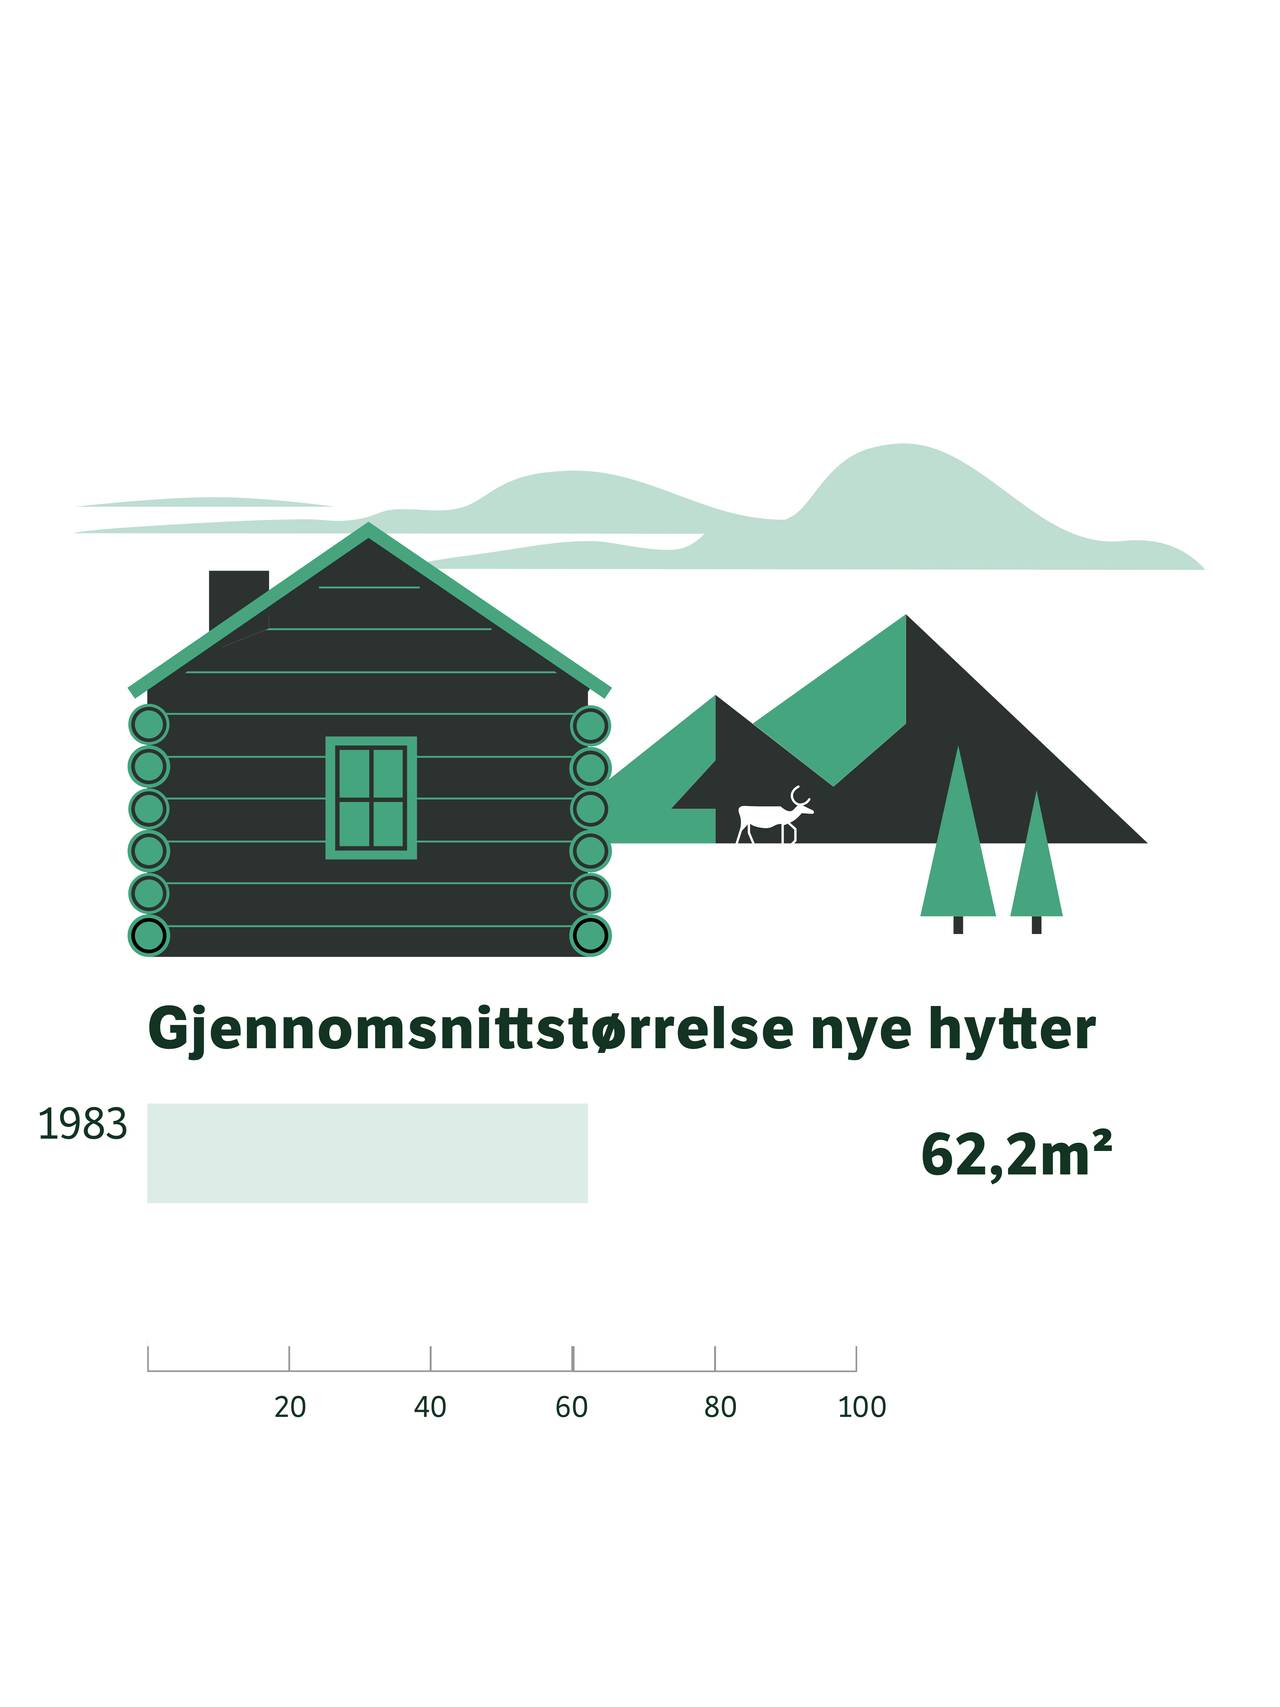 Graf over gjennomsnitt kvm nye hytter (62,2 kvm i 1983)